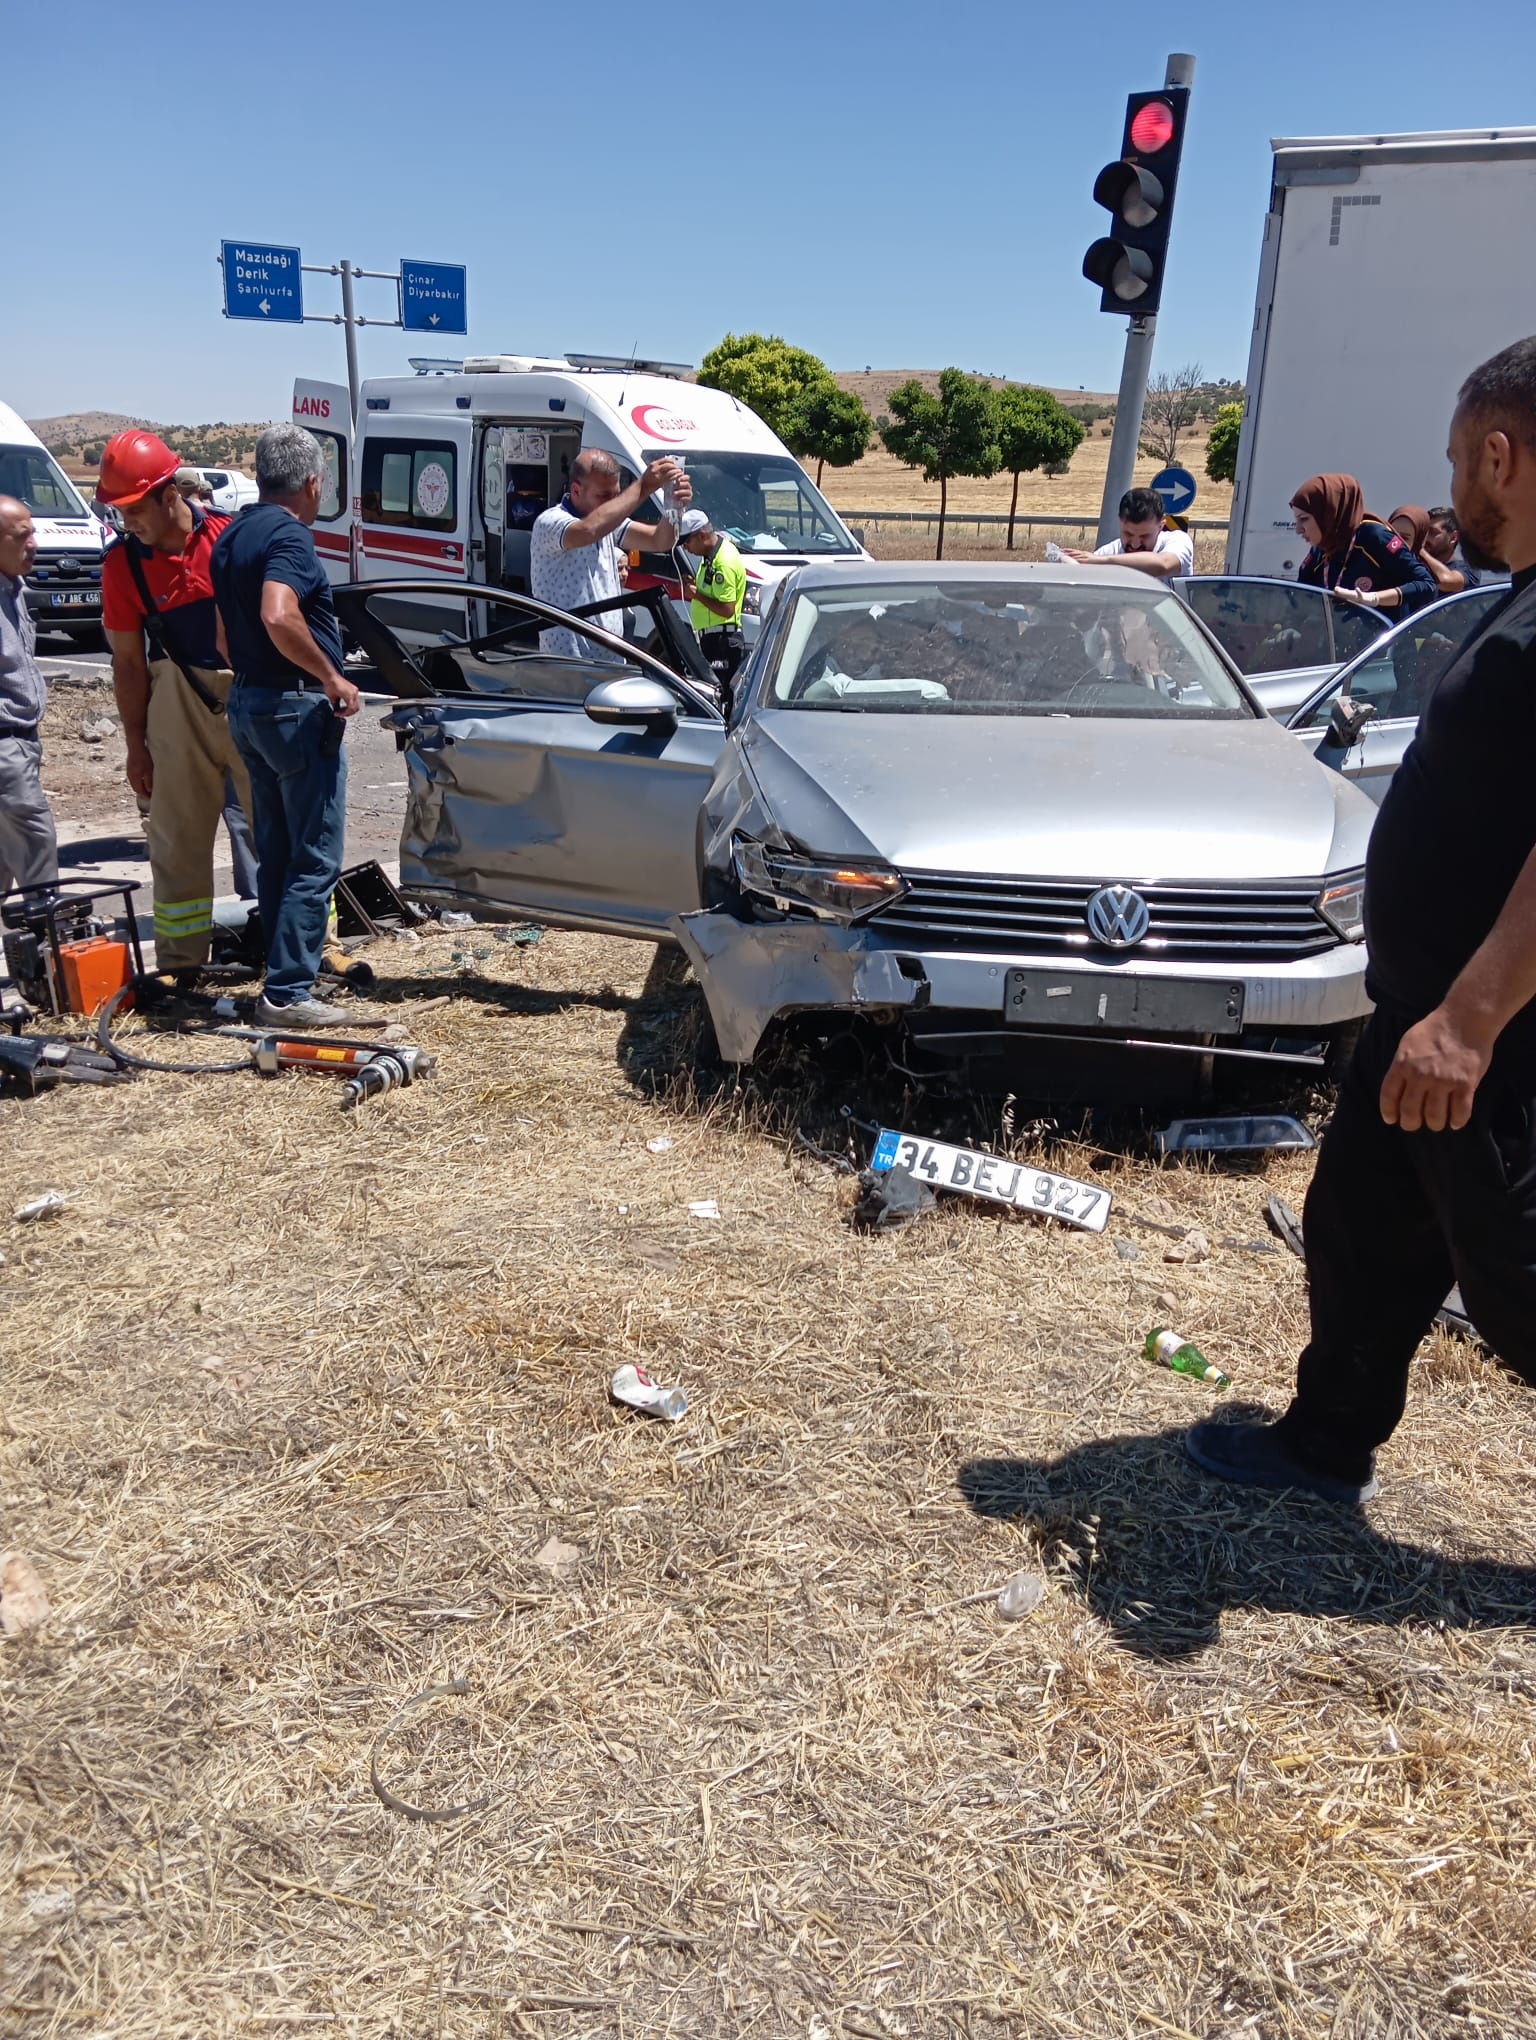 Mardin’de TIR ile otomobilin çarpıştığı kazada 6 kişi yaralandı. Hastaneye kaldırılan yaralılardan birinin durumunun ağır olduğu öğrenildi.